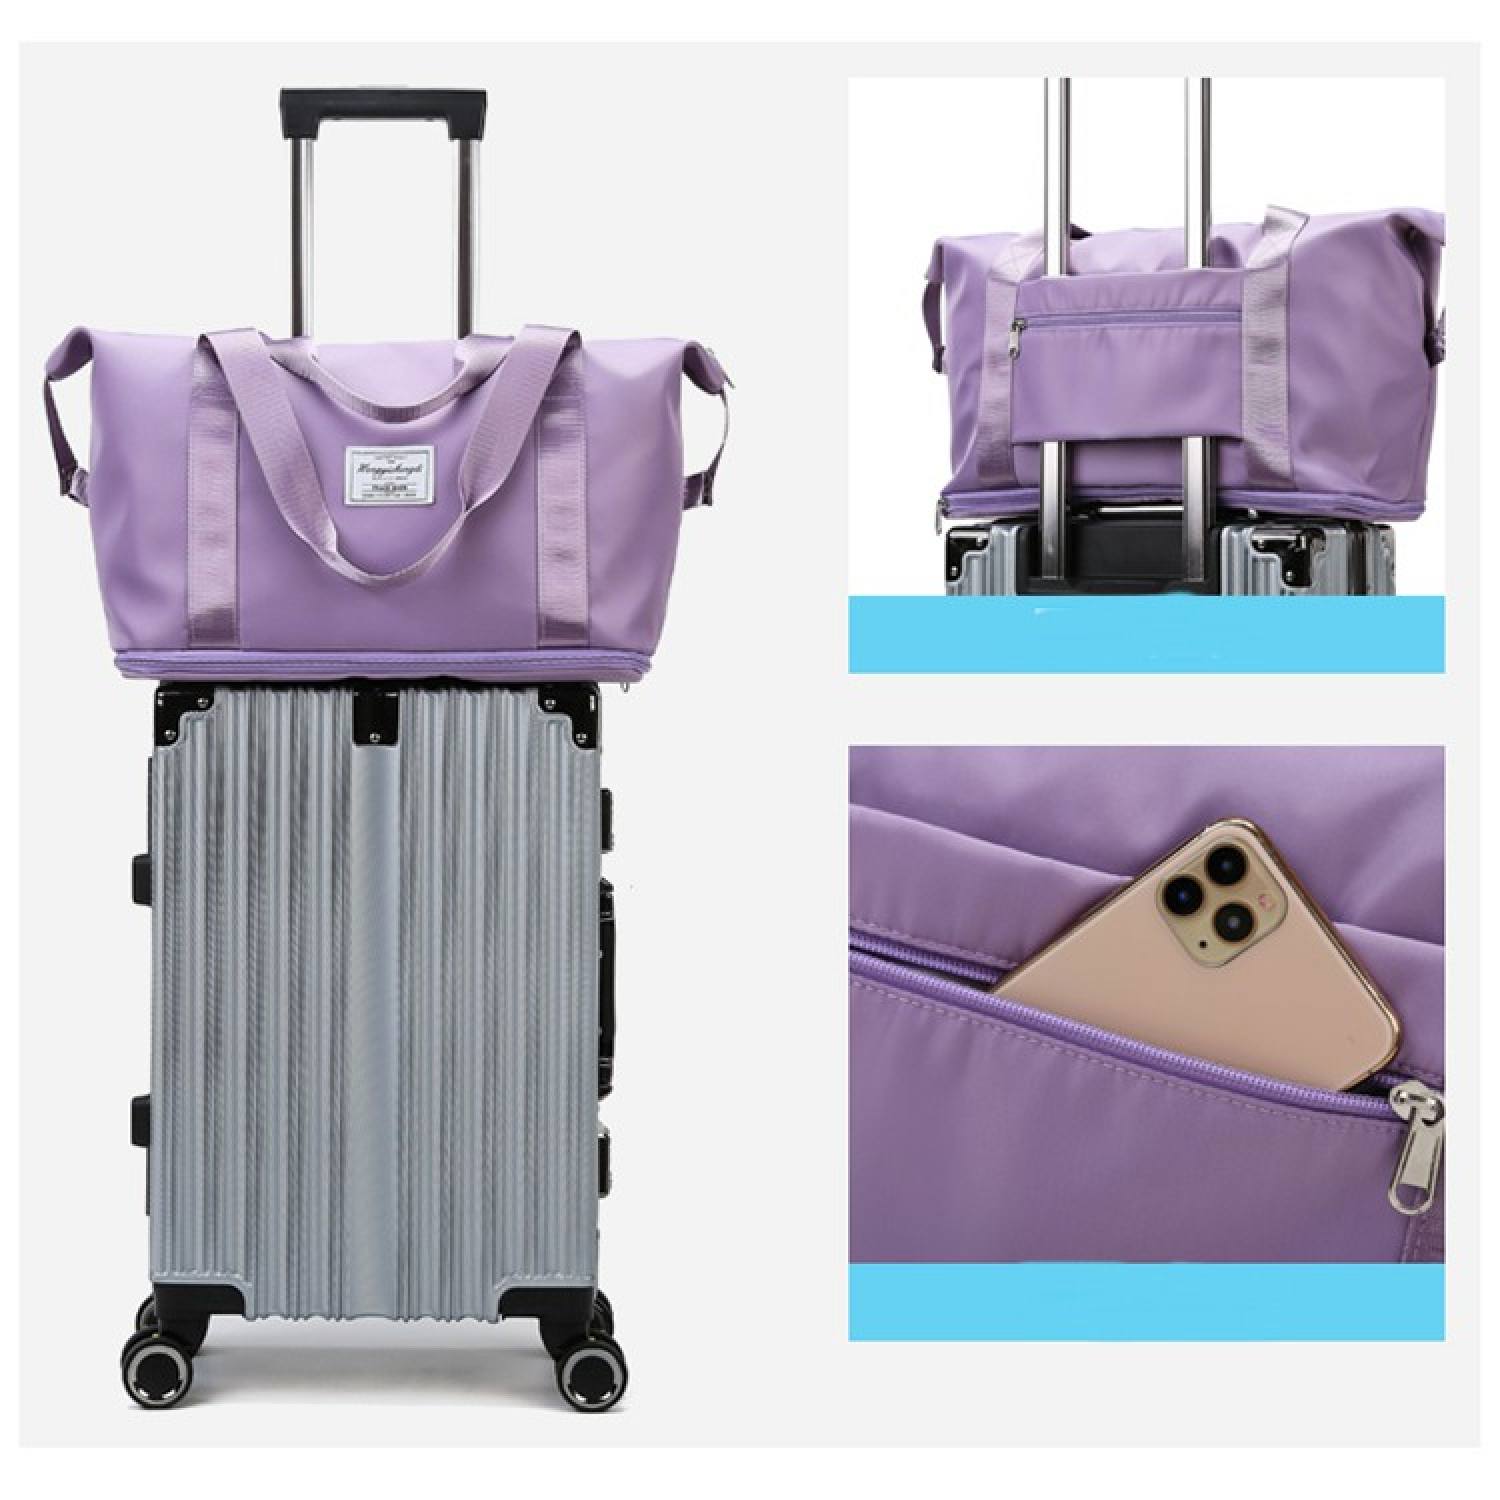 Túi xách du lịch 2 tầng có nhiều ngăn đựng chất liệu vải dù chống thấm nước có thể thu gọn như túi 1 tầng